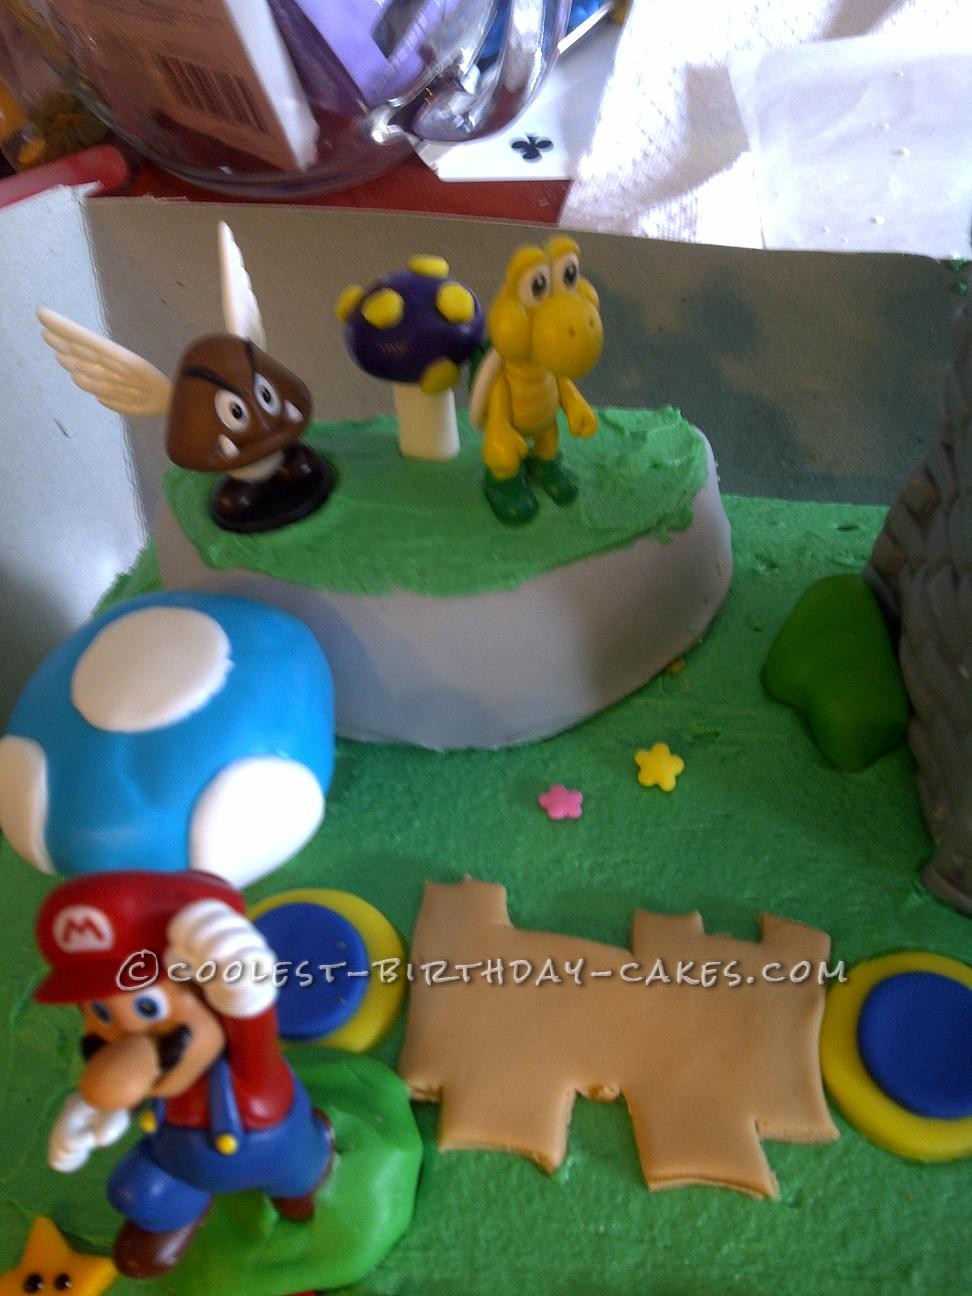 My Son's Super Idea for a Super Mario Bros. Birthday Cake